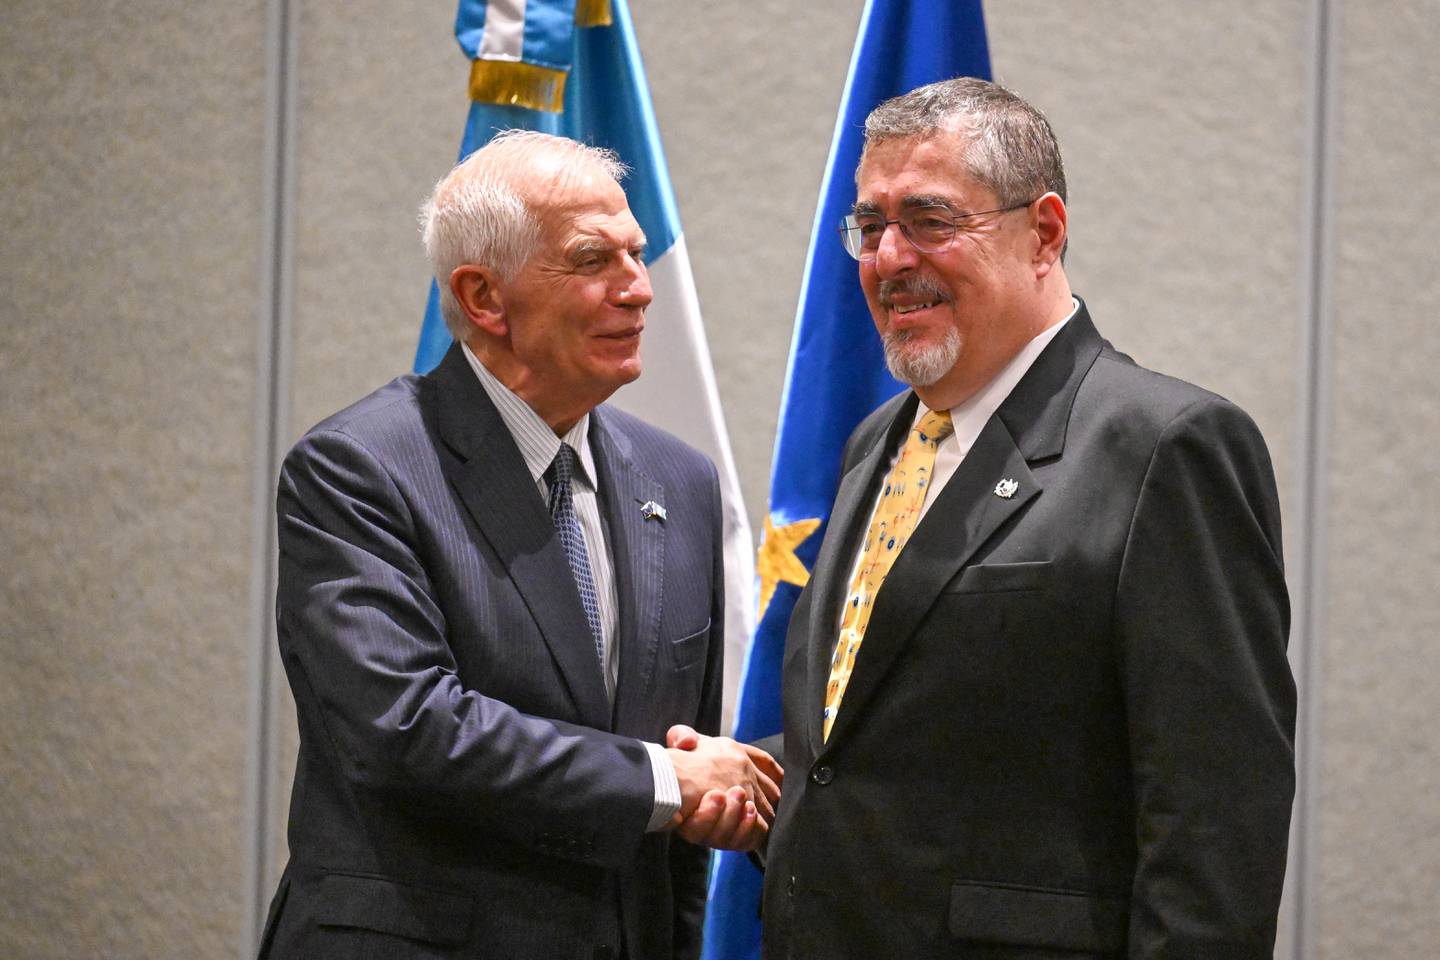 La investidura de Bernardo Arévalo cuenta con la presencia del jefe de la diplomacia europea, Josep Borrell, quien respalda el proceso y demuestra el interés de la Unión Europea en la situación política de Guatemala.